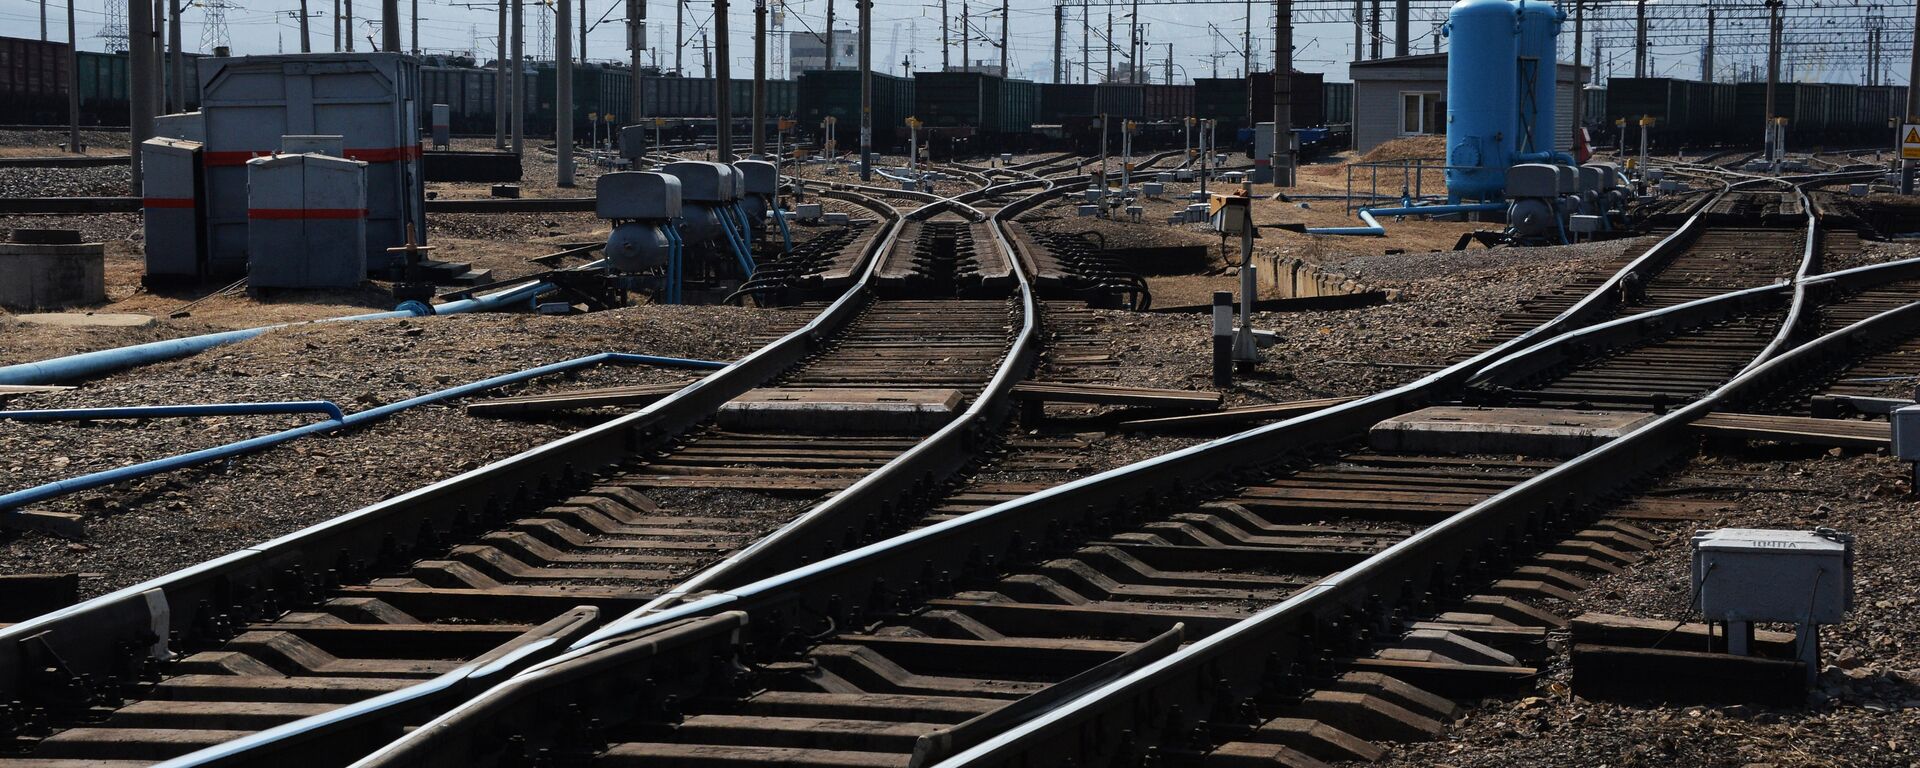 Крупнейшая припортовая ж/д станция Дальневосточной железной дороги Находка - Восточная - Sputnik Արմենիա, 1920, 21.10.2021